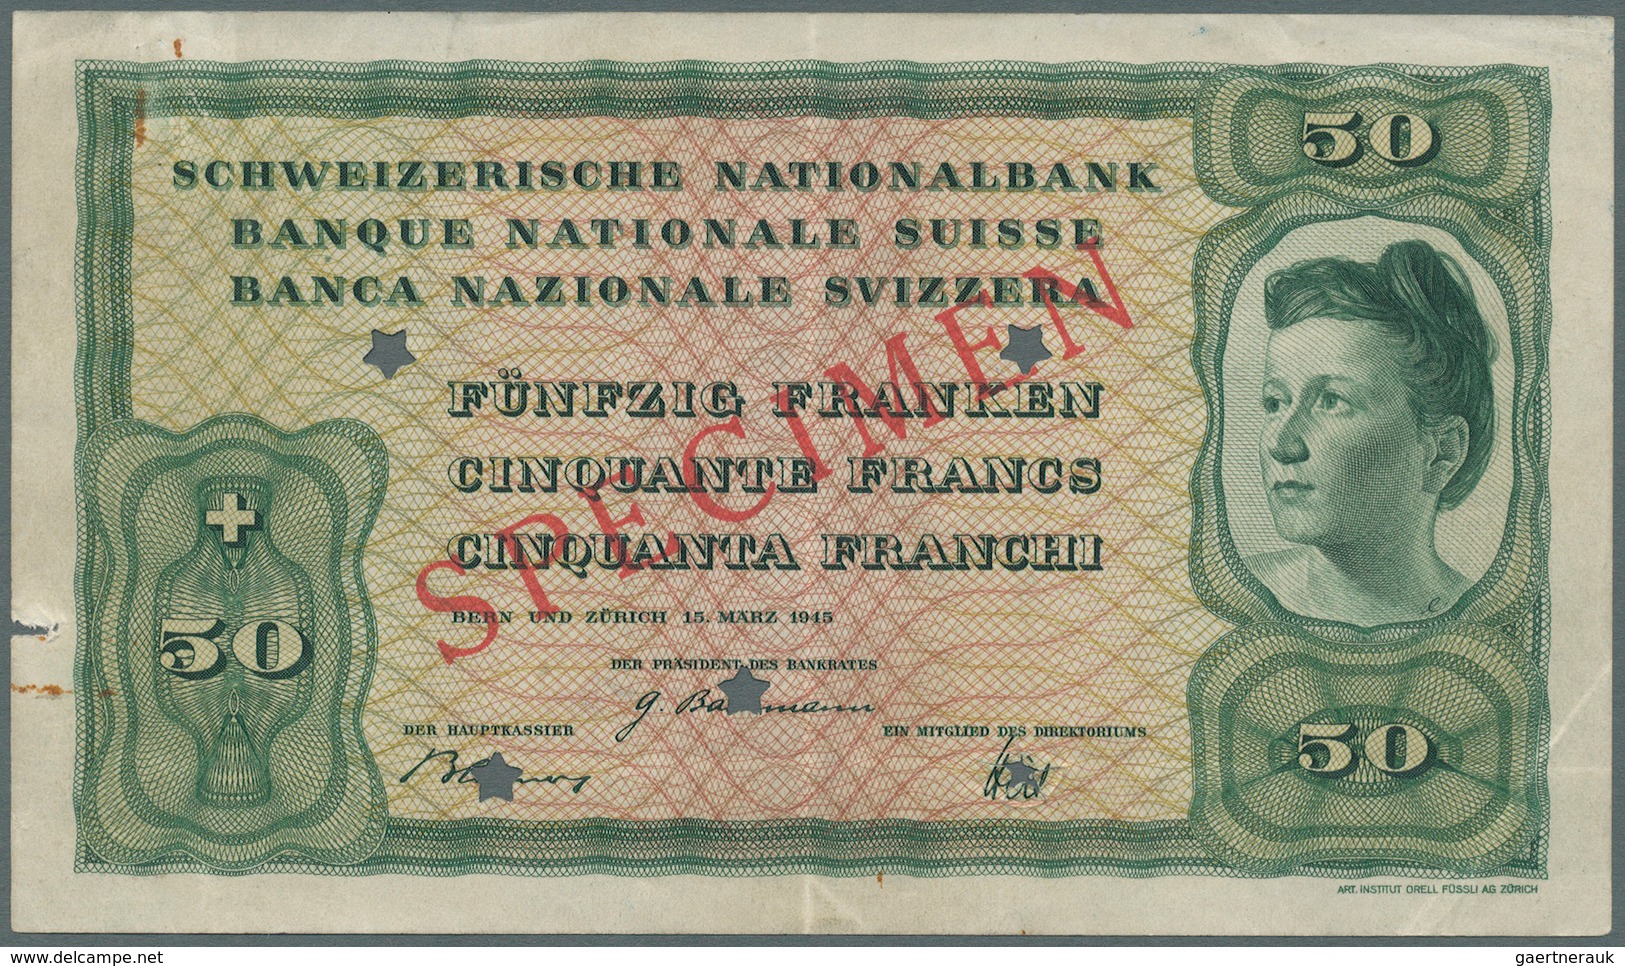 02466 Switzerland / Schweiz: 50 Franken 1945 Specimen P. 42s, Rare Unissued Banknote, 5 Star Cancellation - Suiza